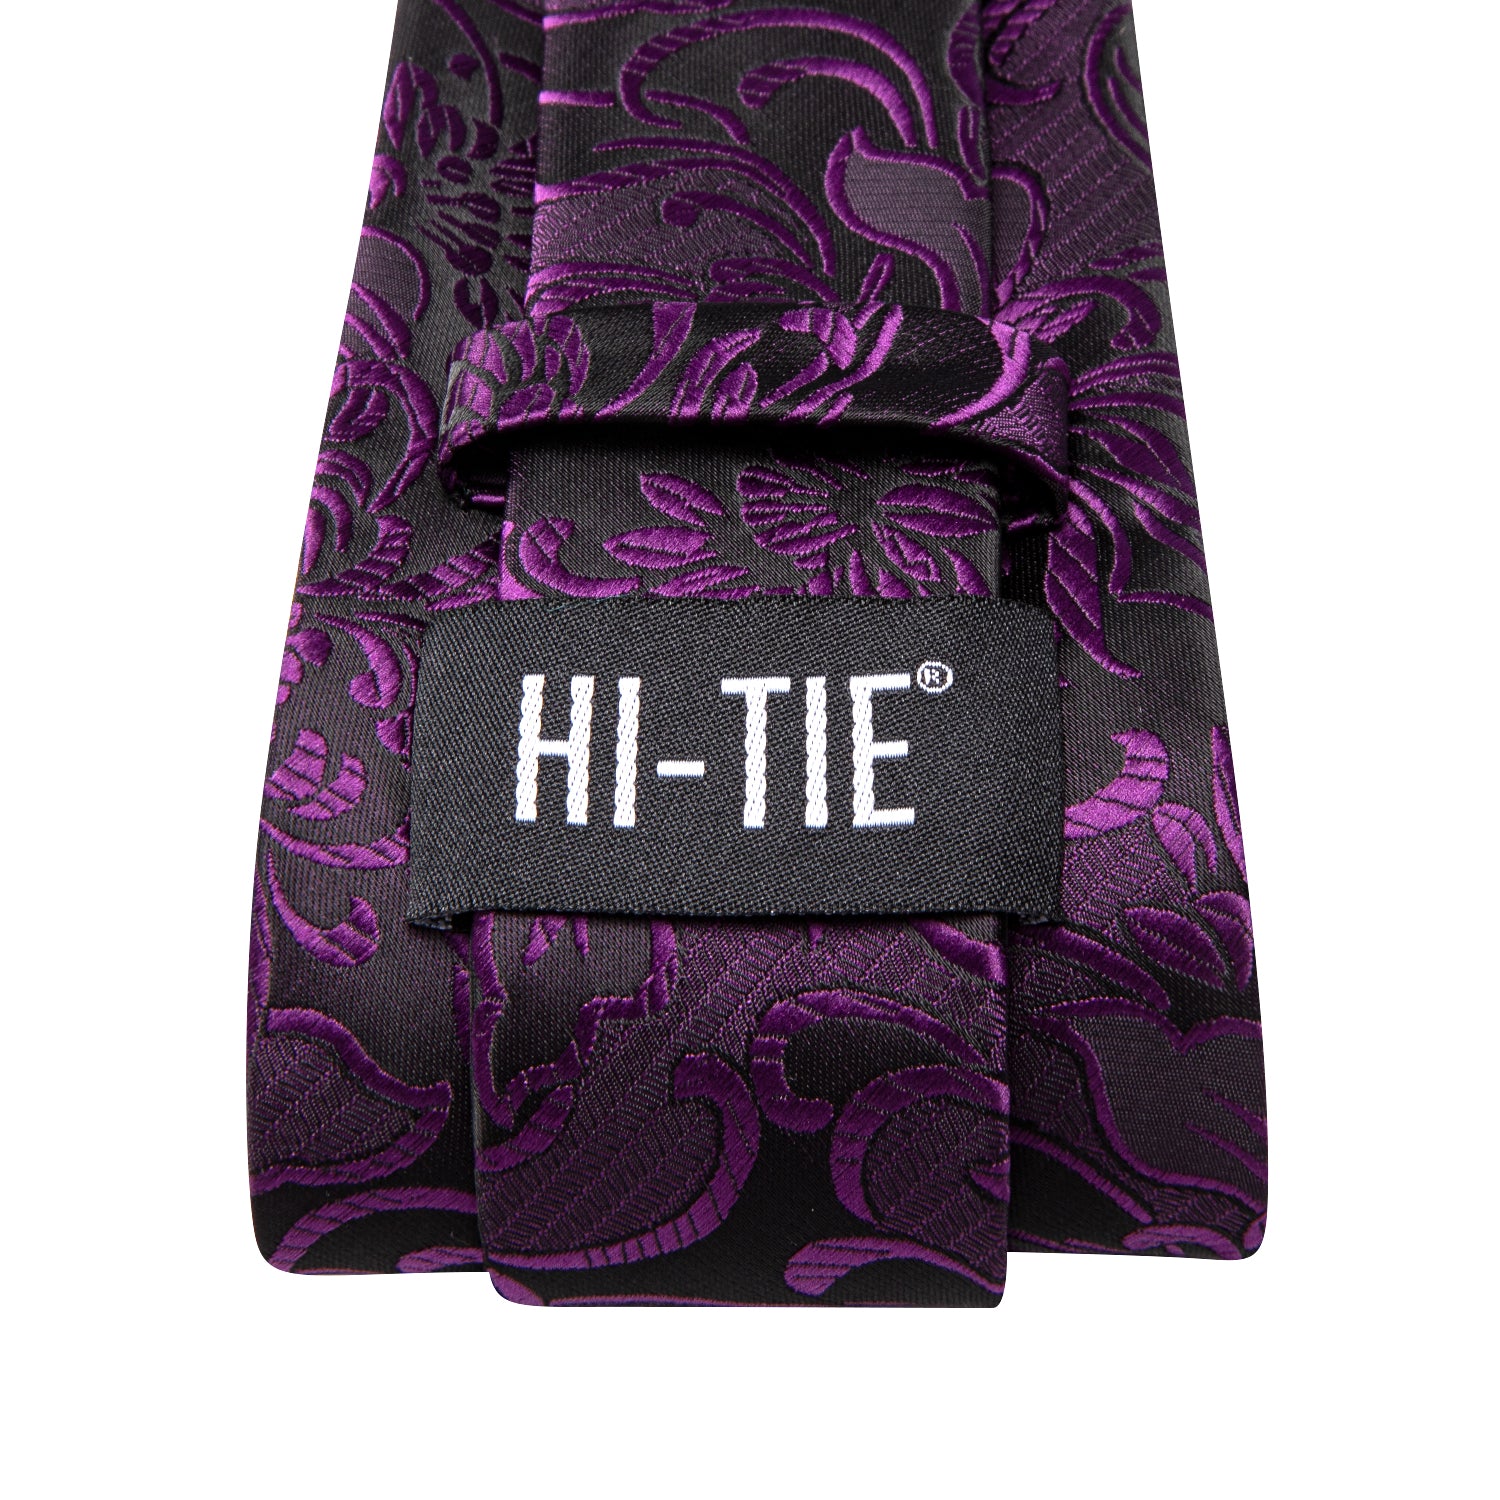 Hi-Tie Deep Purple Paisley Men's Tie Pocket Square Cufflinks Set